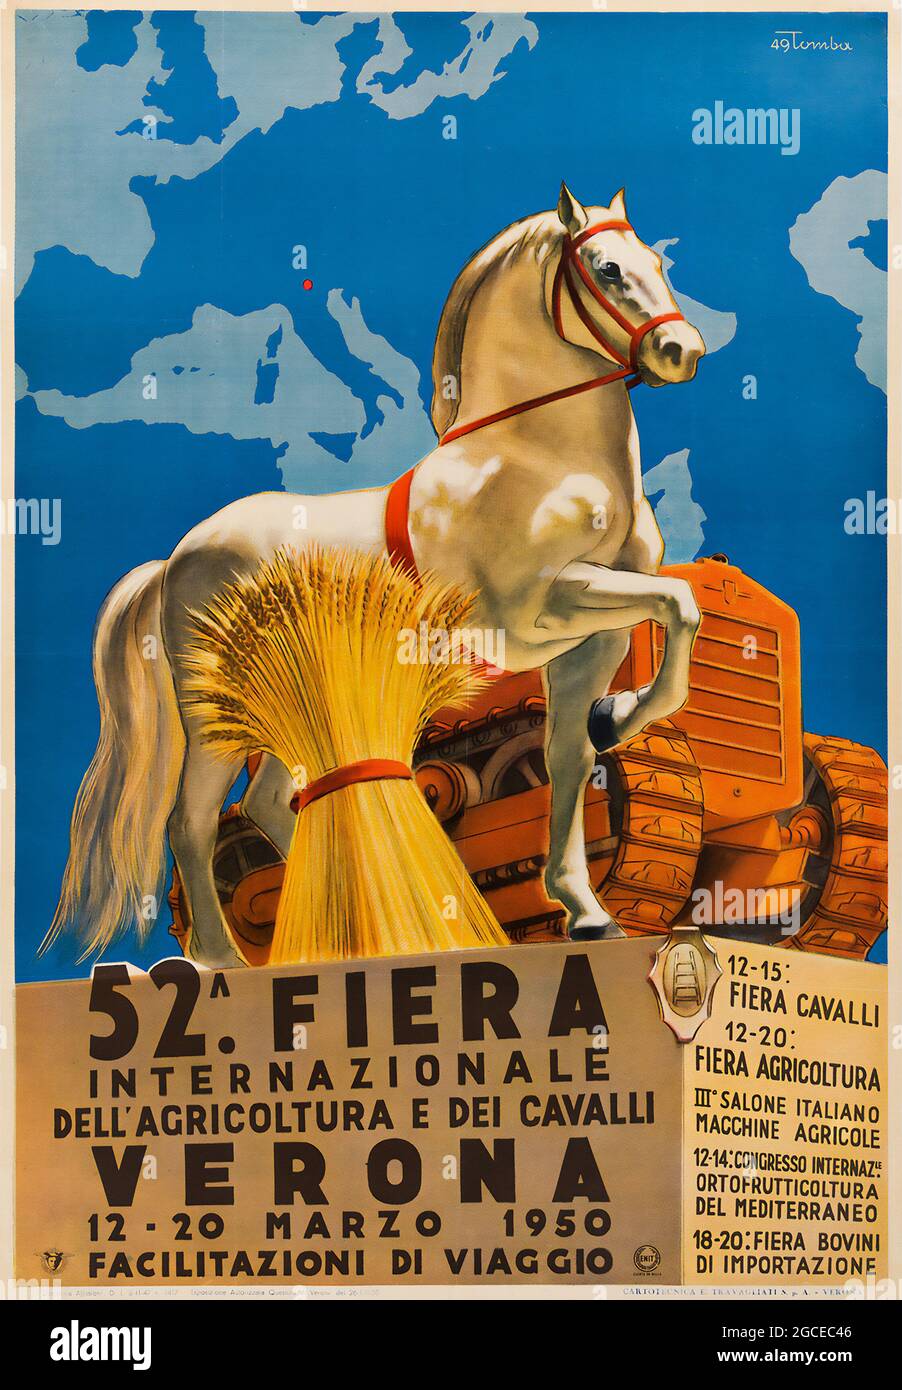 Poster italiano vintage. 52. Fiera. Internazionale dell'Agricoltura e dei cavalli. Verona. 12-20 Marzo 1950. Foto Stock